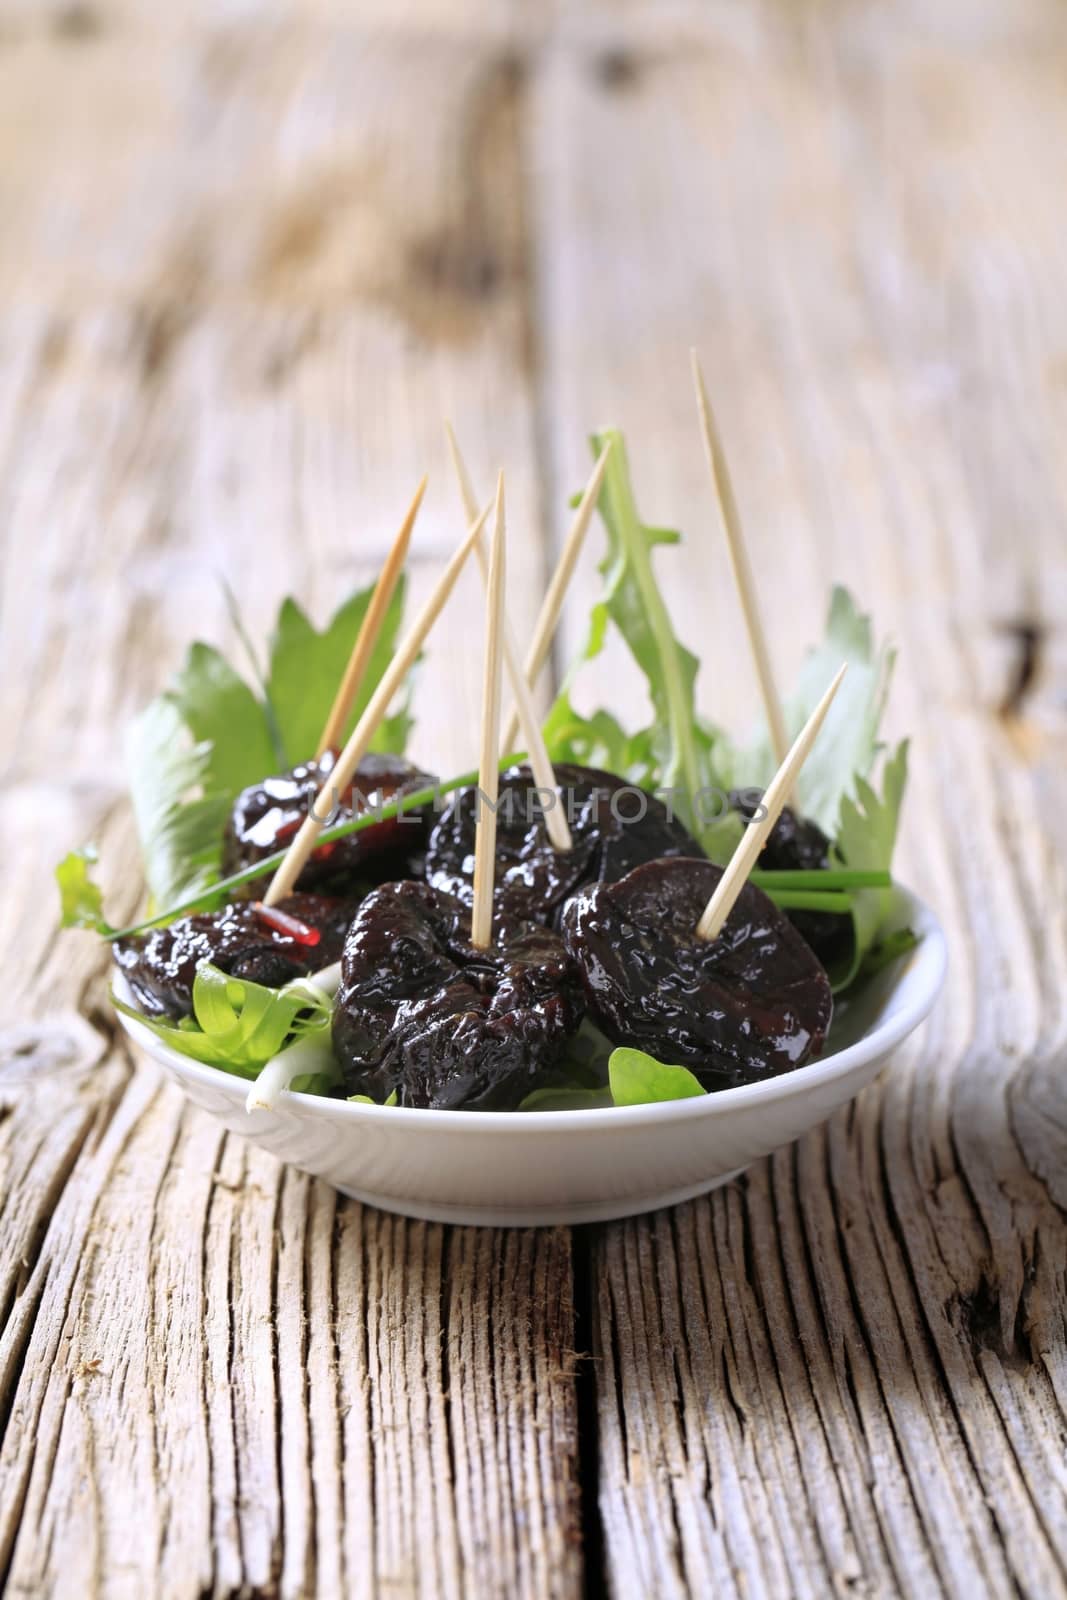 Bowl of prunes and salad greens - closeup